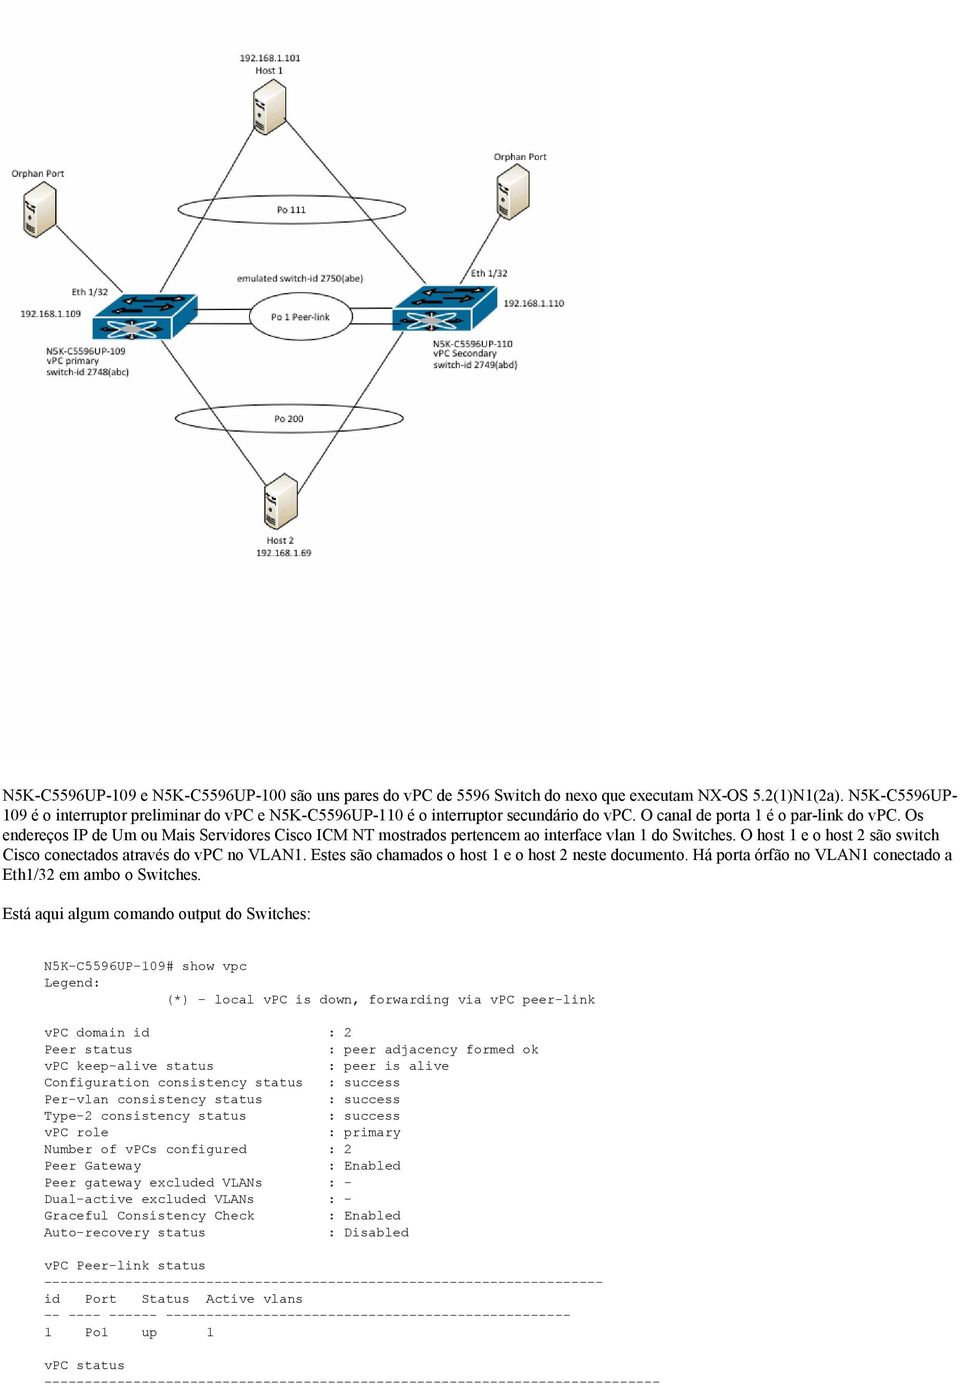 Os endereços IP de Um ou Mais Servidores Cisco ICM NT mostrados pertencem ao interface vlan 1 do Switches. O host 1 e o host 2 são switch Cisco conectados através do vpc no VLAN1.